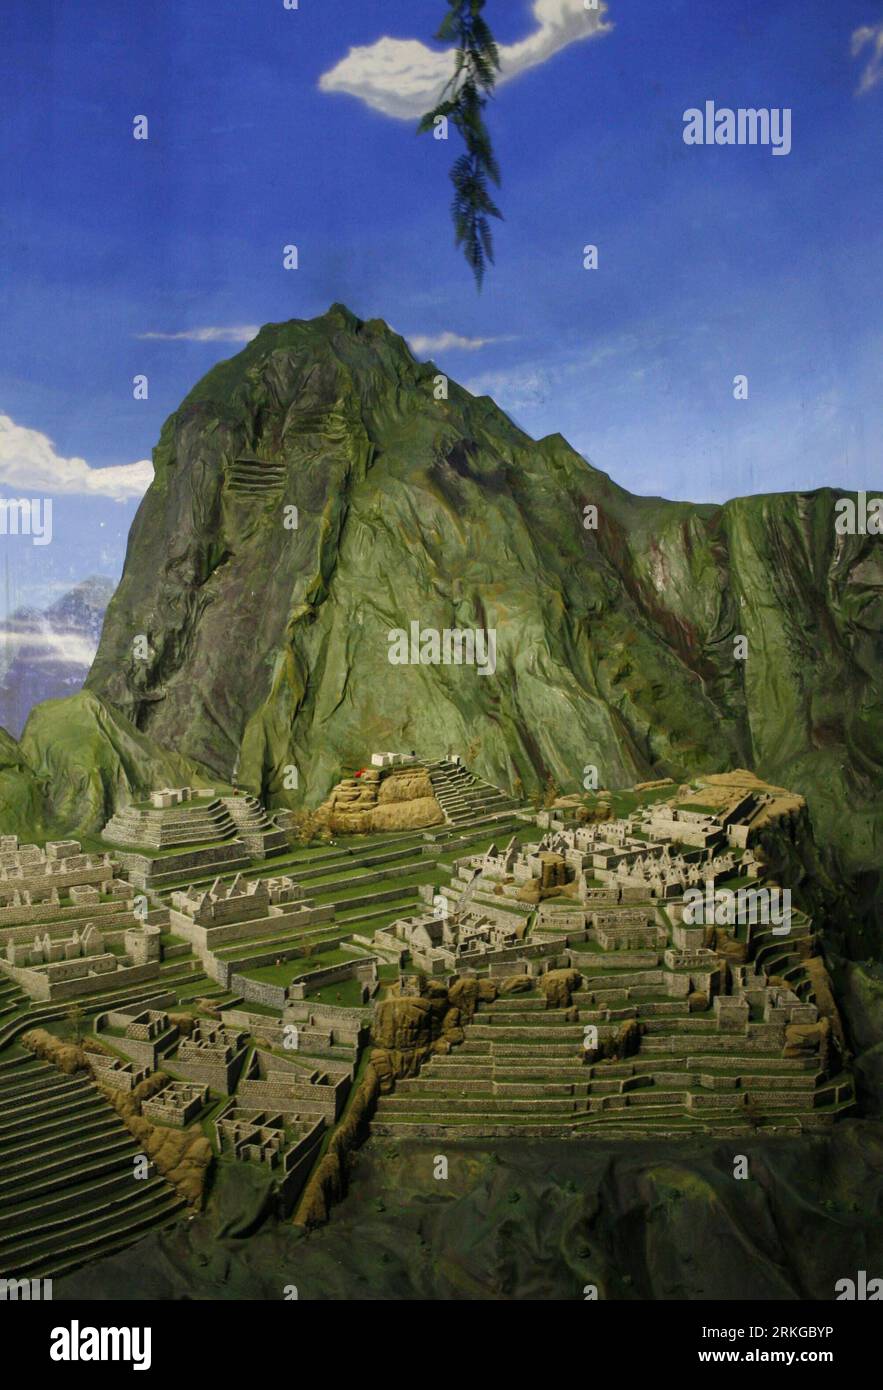 Bildnummer: 55577337 Datum: 07.07.2011 Copyright: imago/Xinhua (110708) -- LIMA, 8 luglio 2011 (Xinhua) -- la foto scattata il 7 luglio 2011 mostra una vista parziale di una replica in scala, 90% simile alla città inca di Machu Picchu , presentata per la celebrazione del centenario della sua scoperta, a Lima, capitale del Perù. Machu Picchu, la città perduta degli Inca, è stata eletta come una delle 7 nuove meraviglie del mondo nel luglio 2007. (Xinhua/Luis Camacho) (lxz) PERÙ-LIMA-CULTURA-REPLICA DI MACHU PICCHU PUBLICATIONxNOTxINxCHN Gesellschaft Feierlichkeiten Entdeckung Inka Modell Miniaturmodell Objekte premiumd Foto Stock